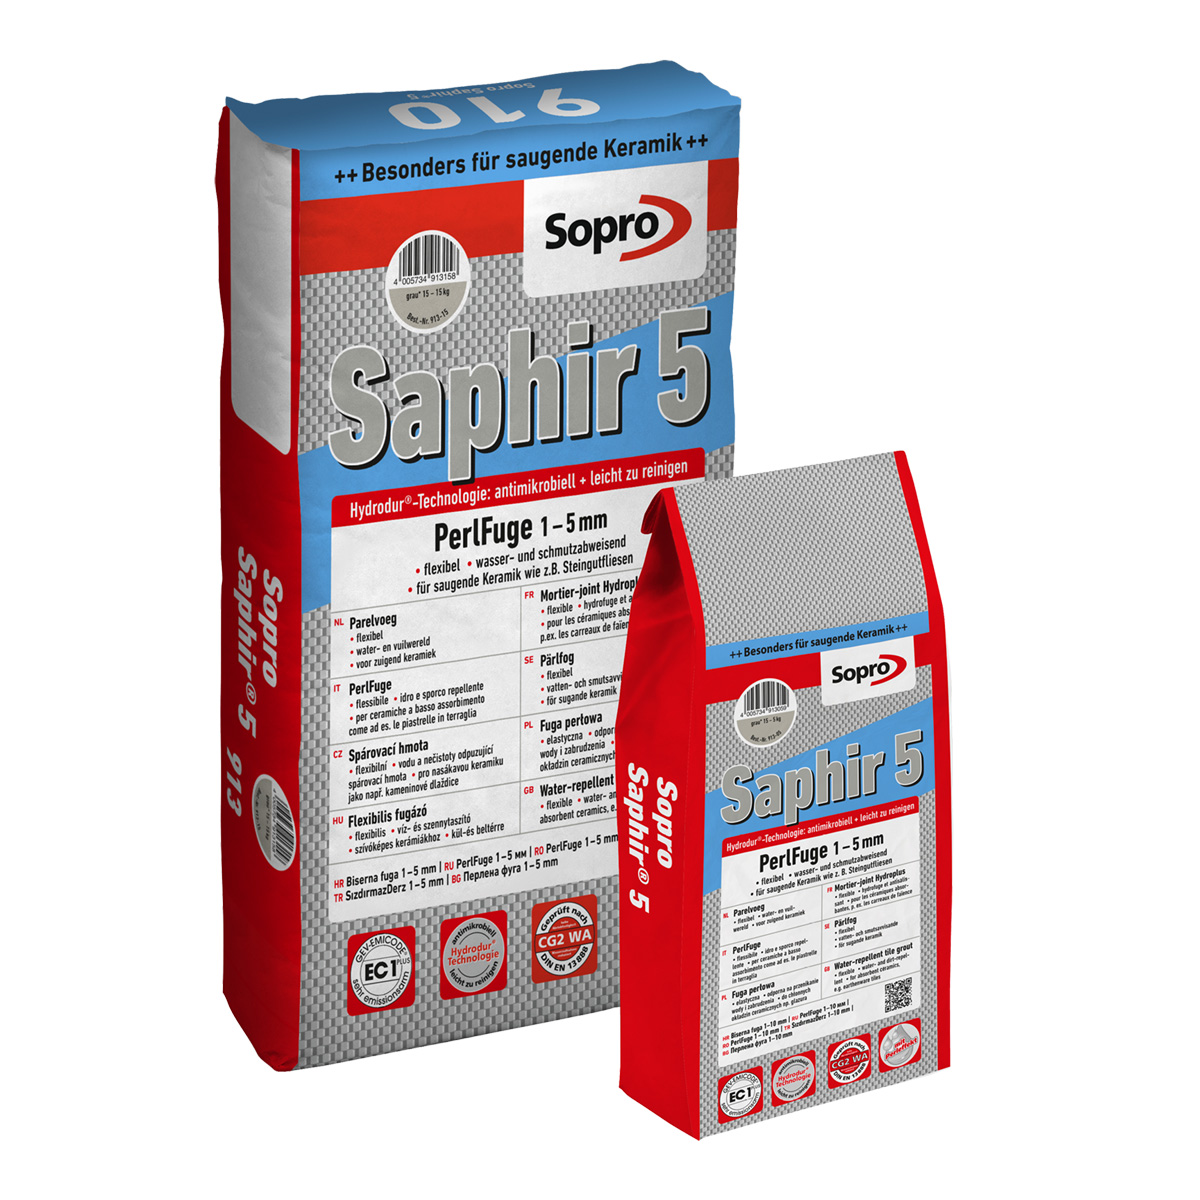 Sopro Saphir® 5 PerlFuge